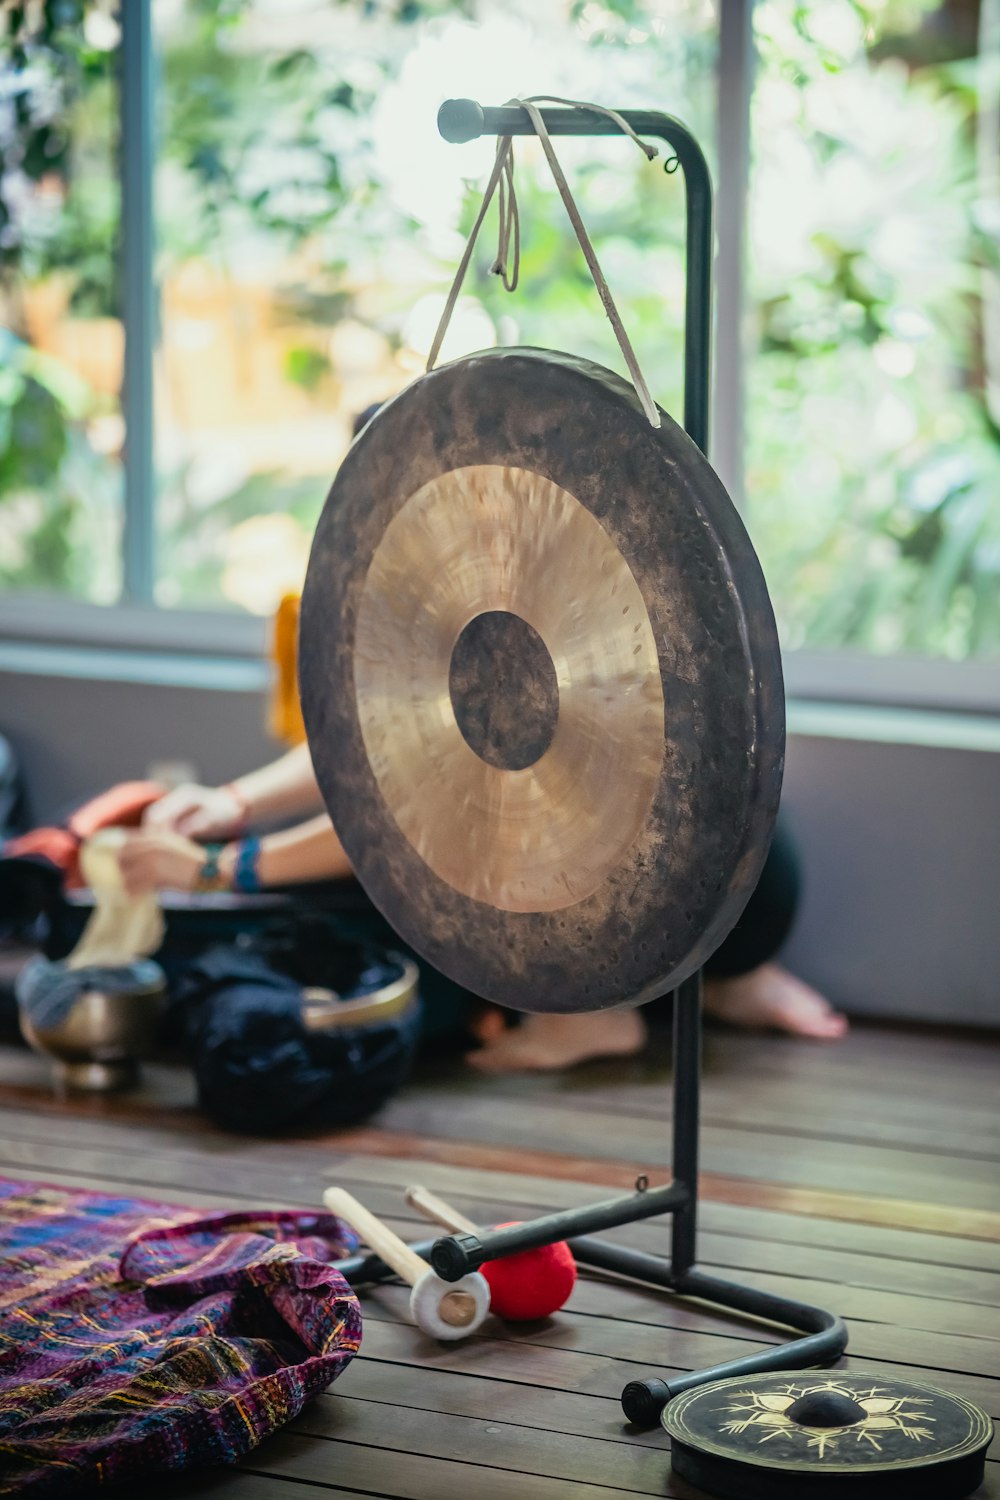 Una persona sentada en el suelo junto a un gong